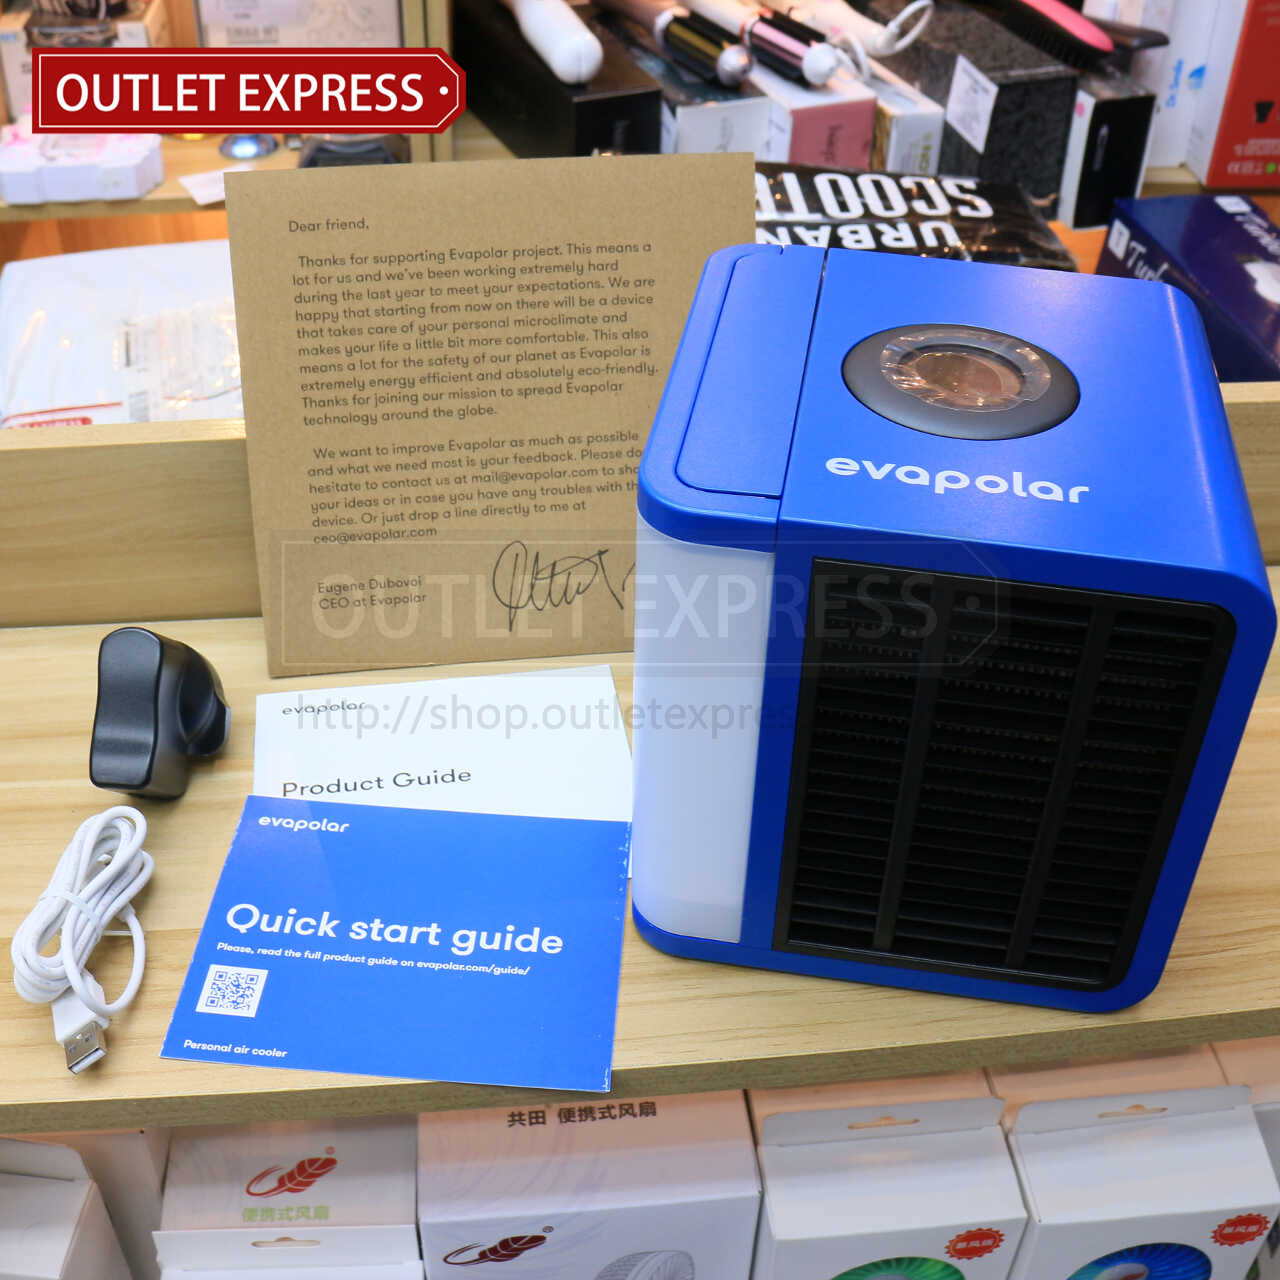 Evapolar 小型流動冷氣機 及包裝盒內配件- Outlet Express HK生活百貨城實拍相片